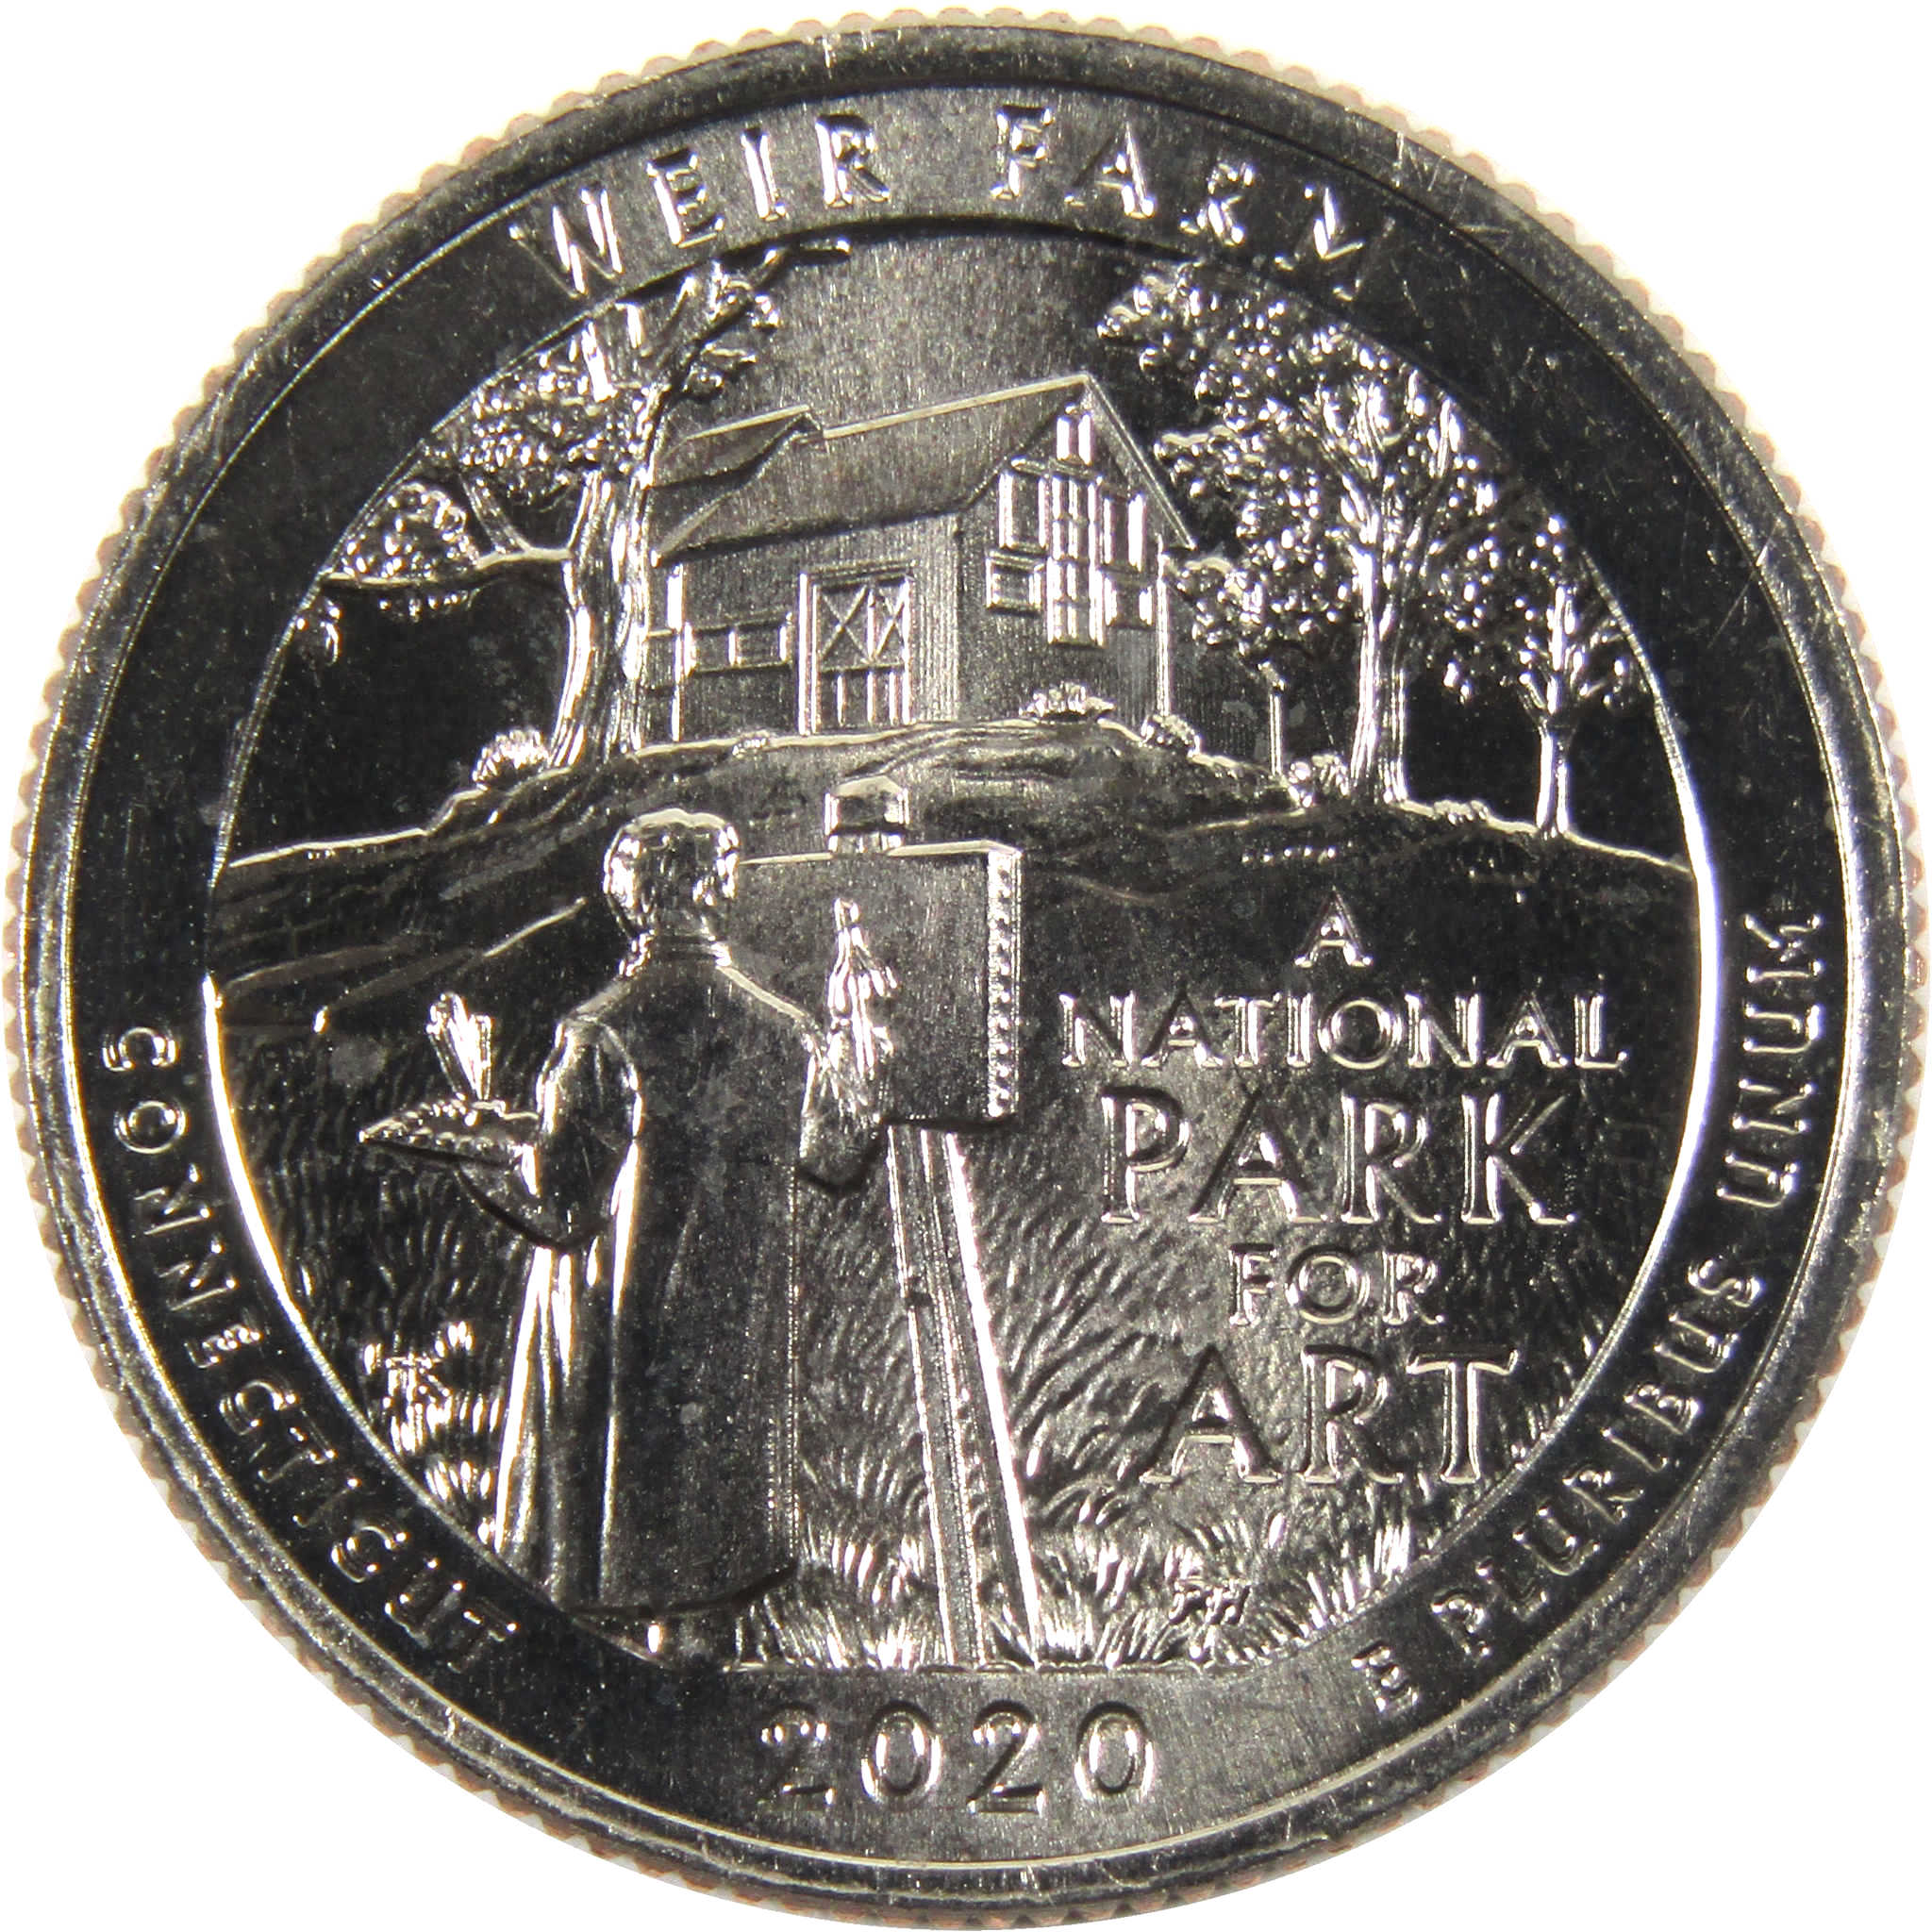 2020 S Weir Farm NHS National Park Quarter BU Uncirculated Clad Coin